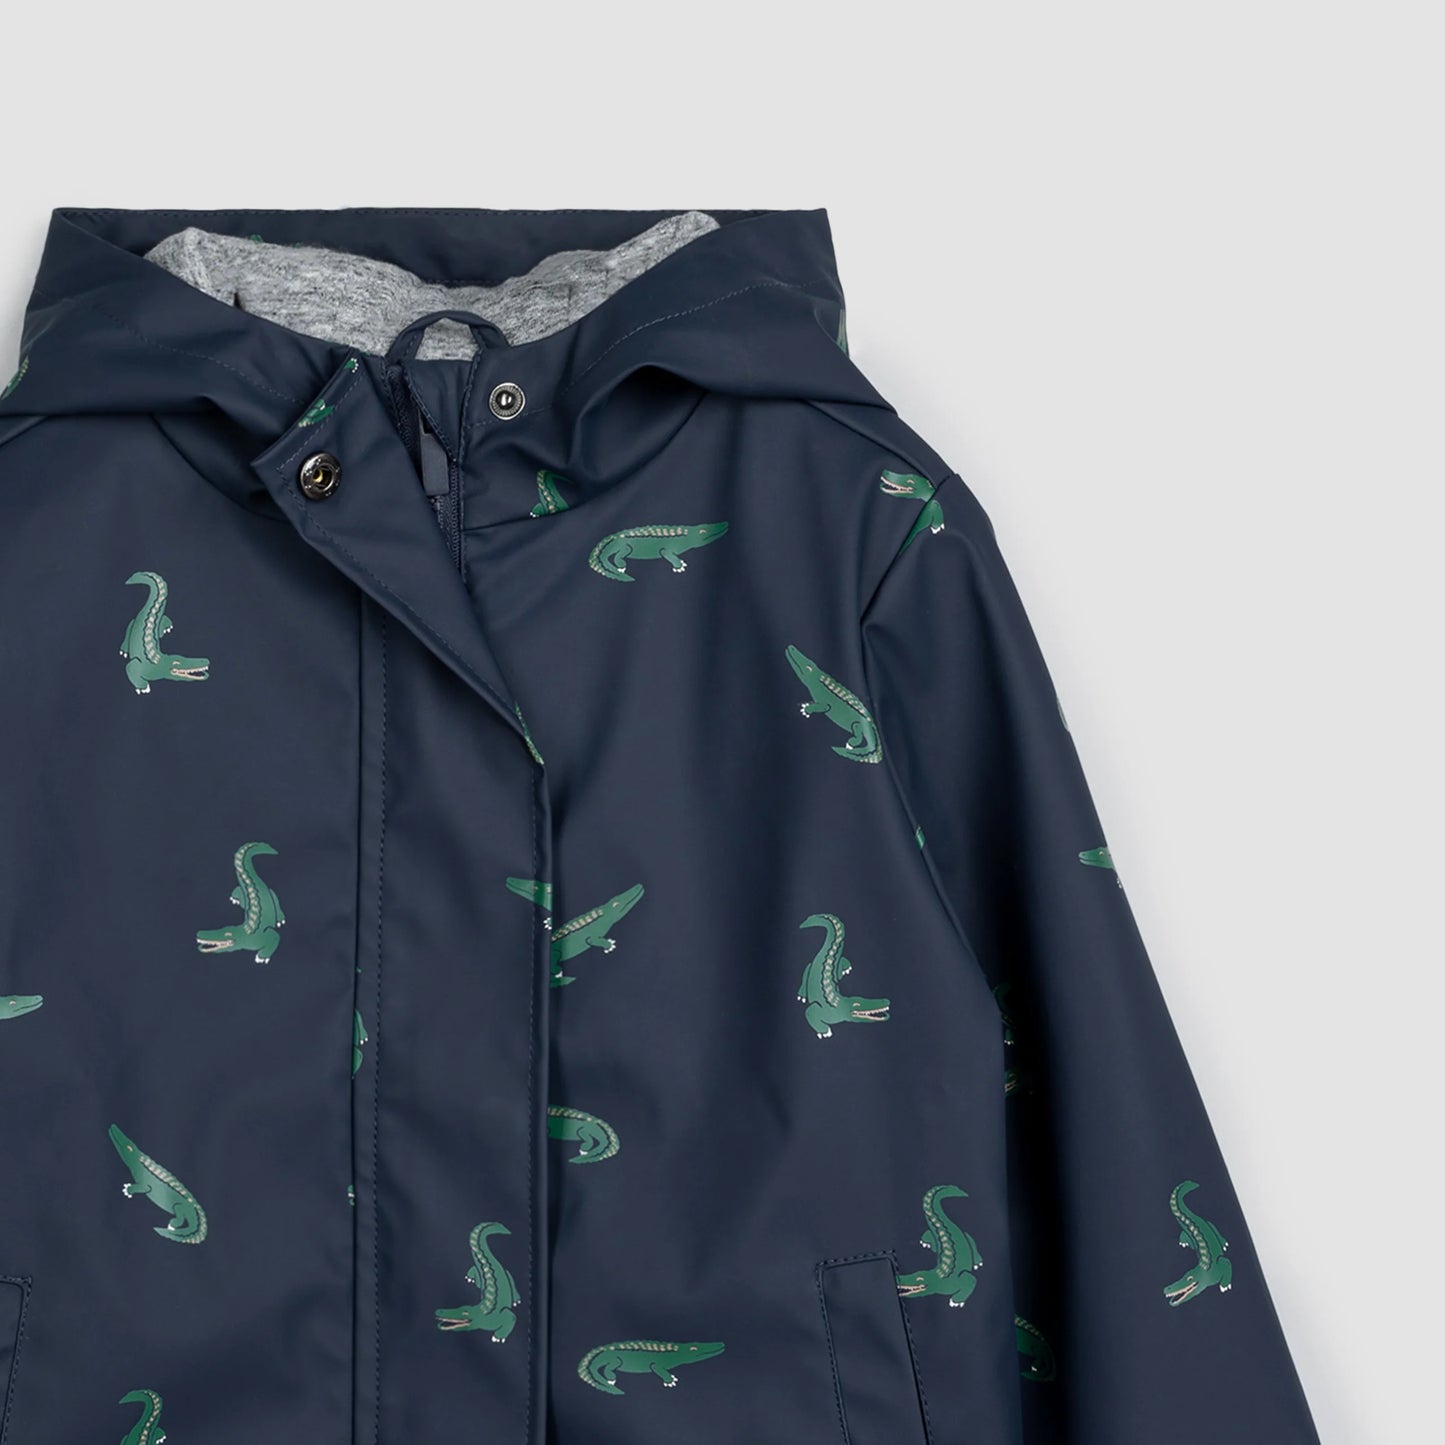 Croc Print Hooded Raincoat